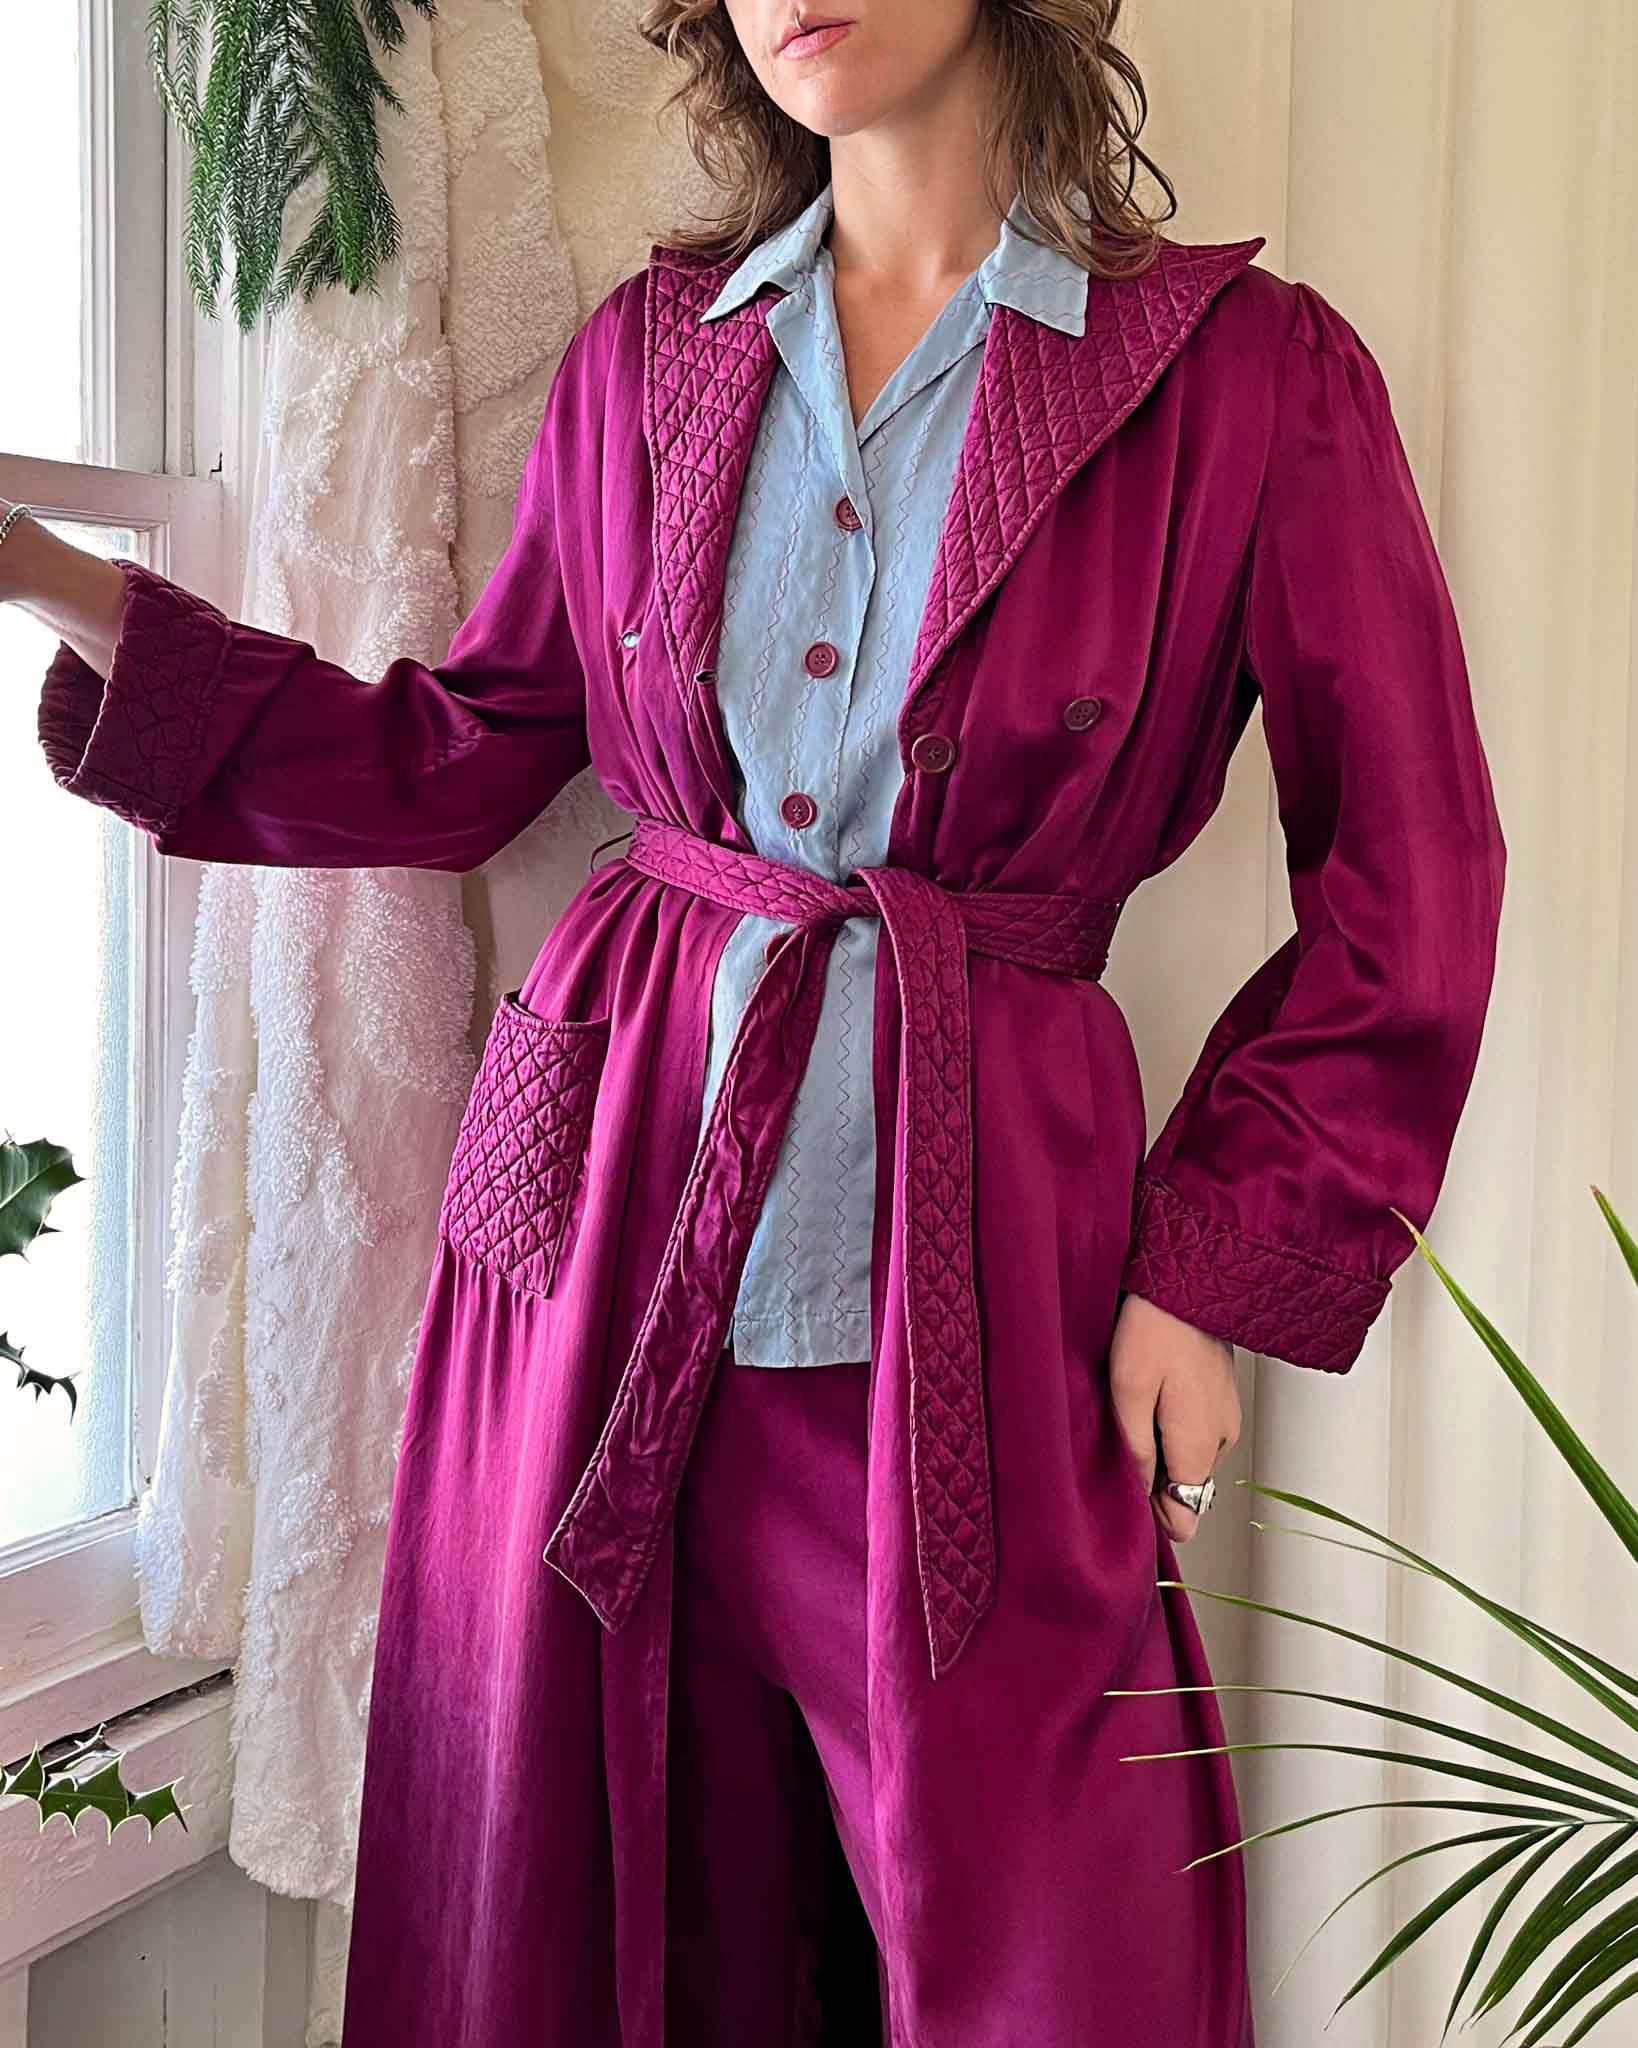 JIOAKFA Plus Size Sleep Robes For Womens,Plush Lounge Dress,Soft Warm  Bathrobes Fuzzy Kimono Robes Fleece Sleepwear (S-5X) at Amazon Women's  Clothing store